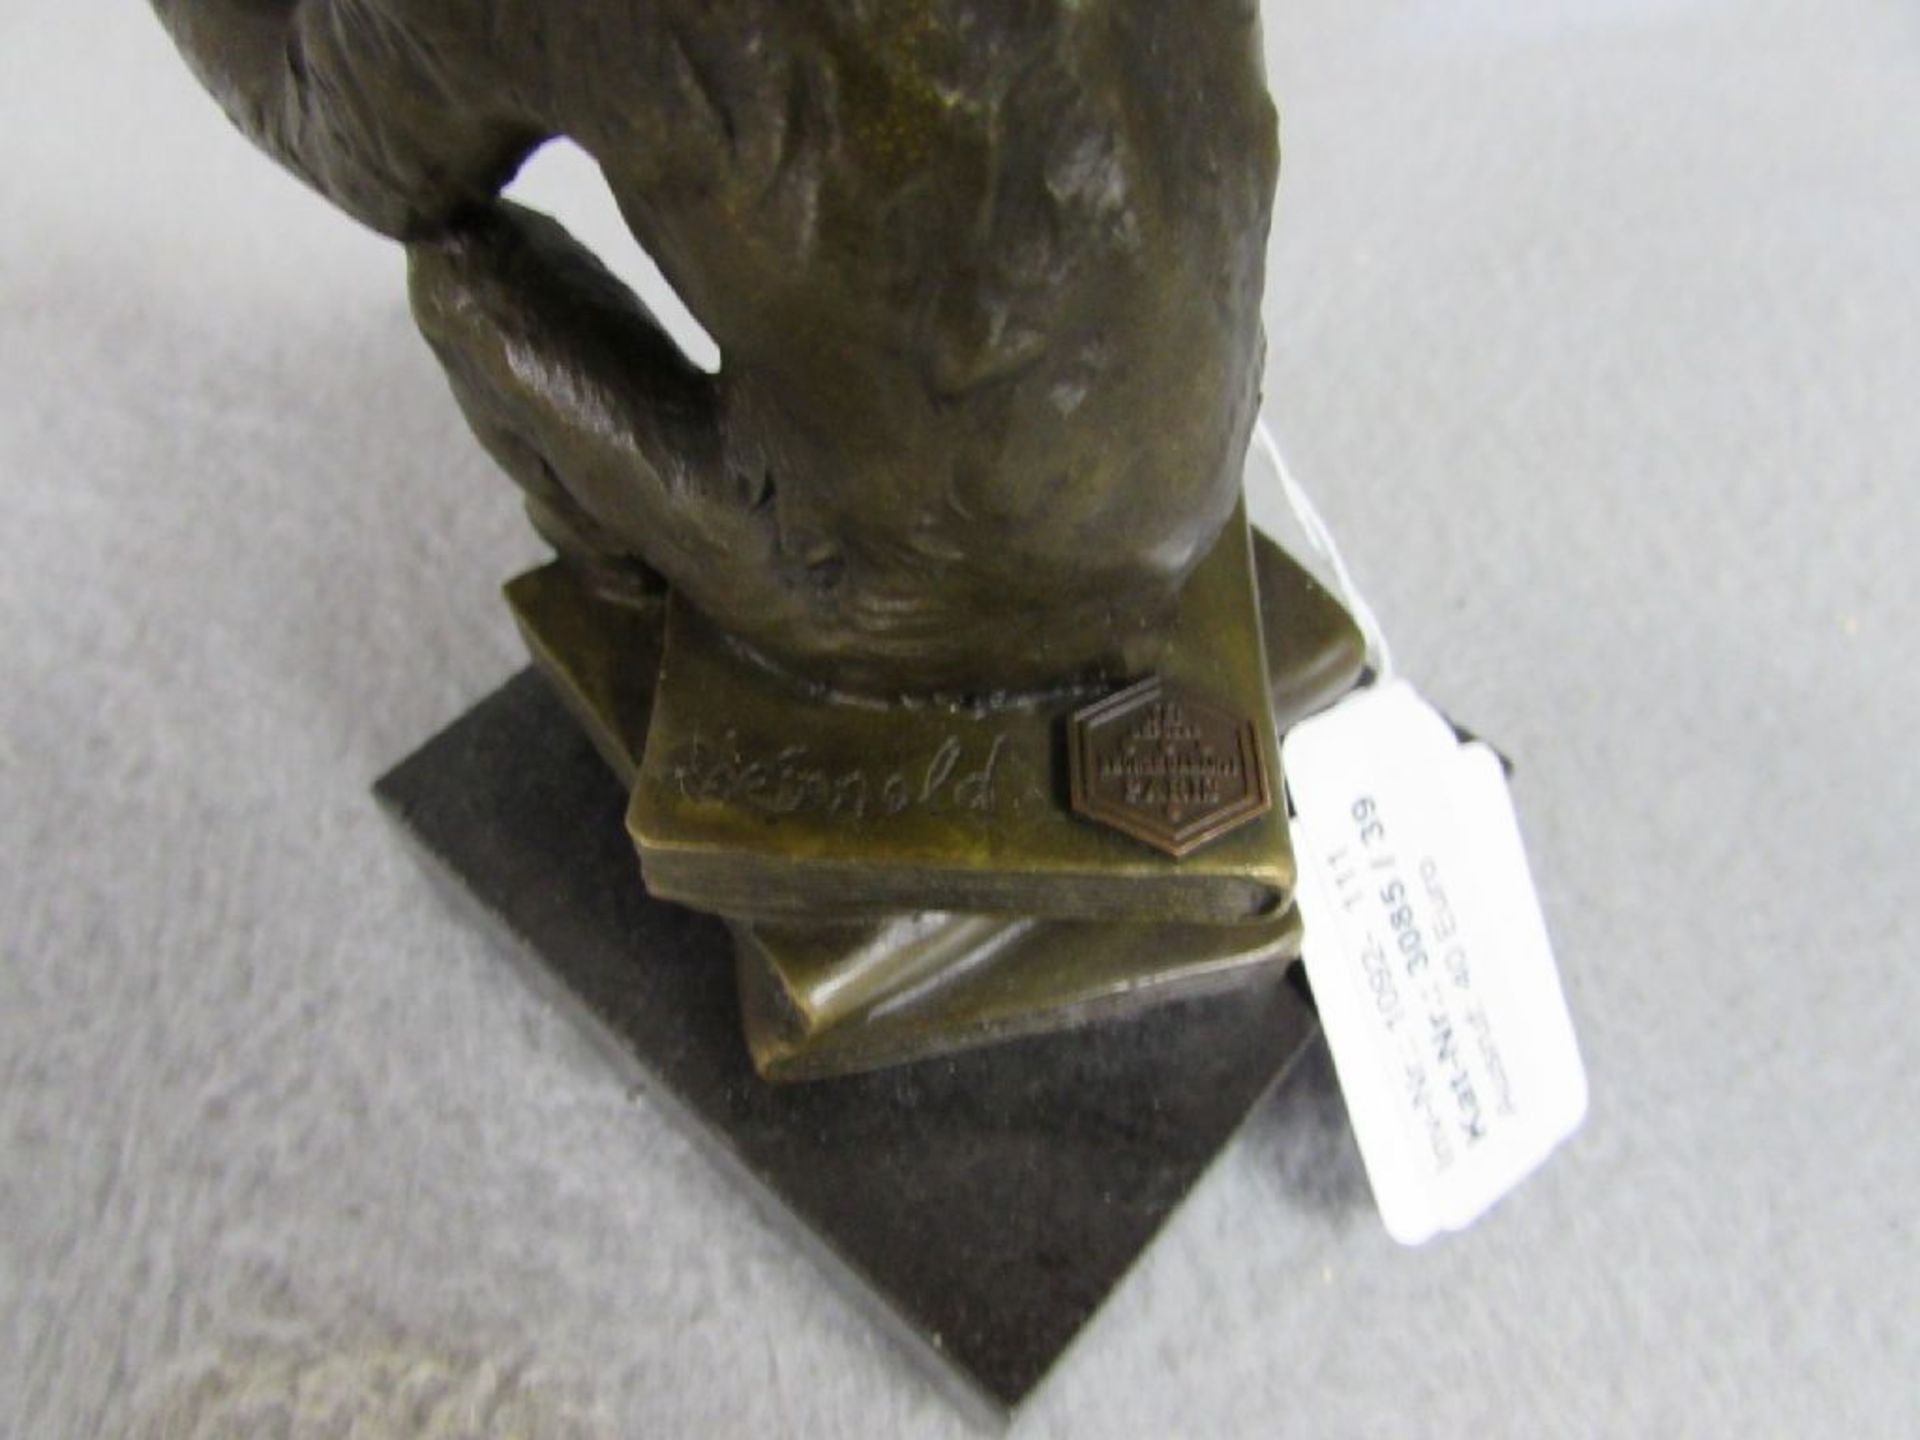 Bronzeskulptur "Der Denker" in Form eines Affen mit Totenschädel und Büchern 14cm höhe Plakettiert - Image 2 of 4